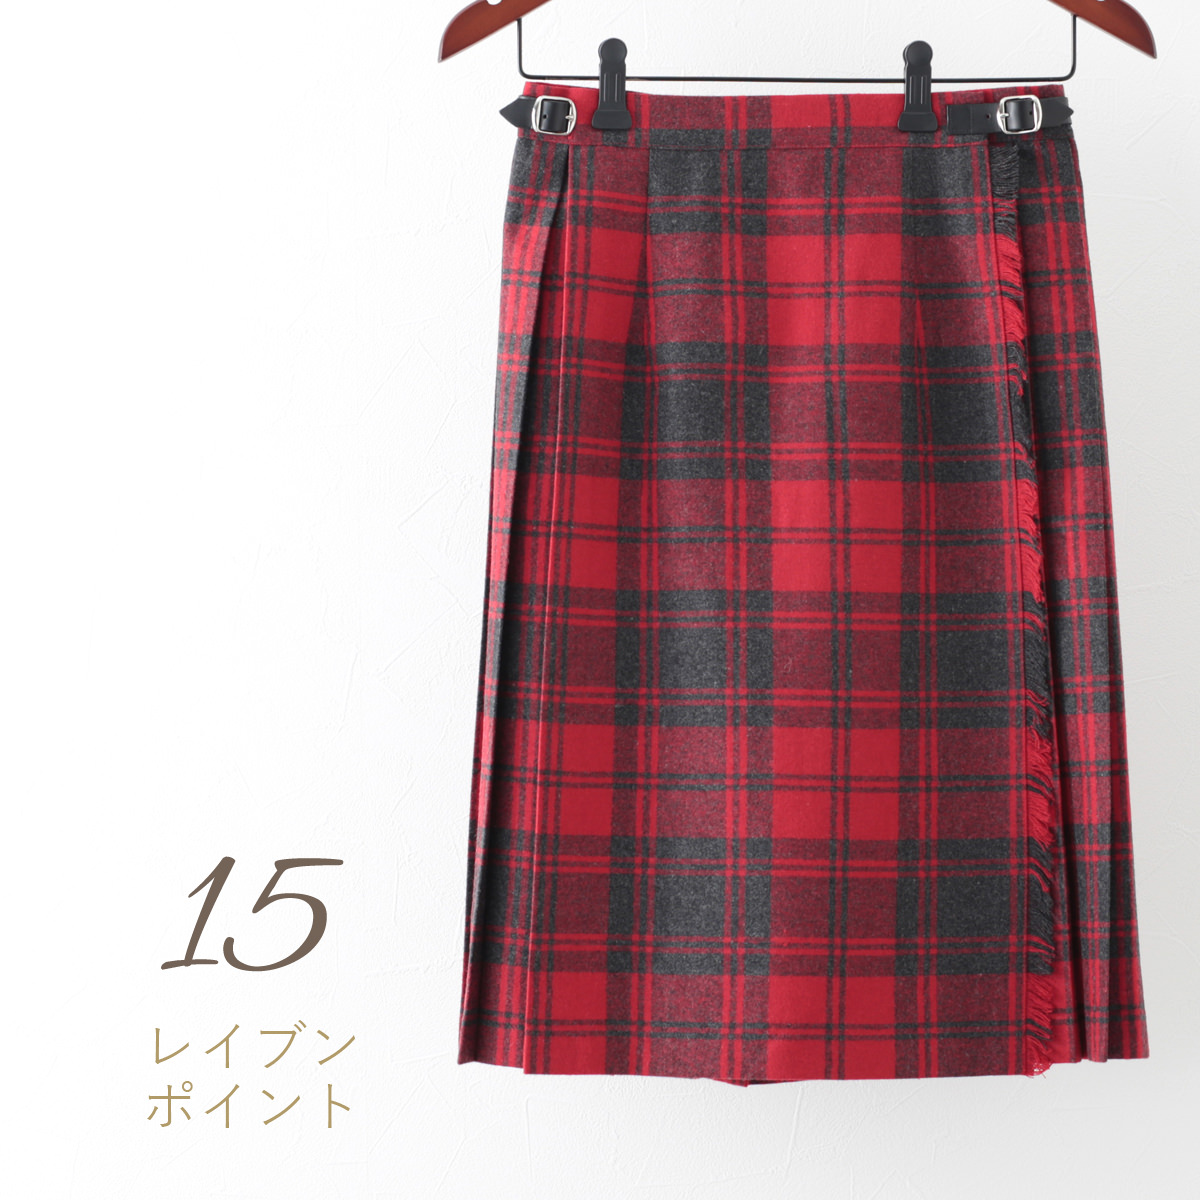 オニールオブダブリン スカート ウールミックス O'NEIL OF DUBLIN キルト 59cm 20色 タータンチェック ひざ丈 ラップスカート  巻きスカート アイルランド製